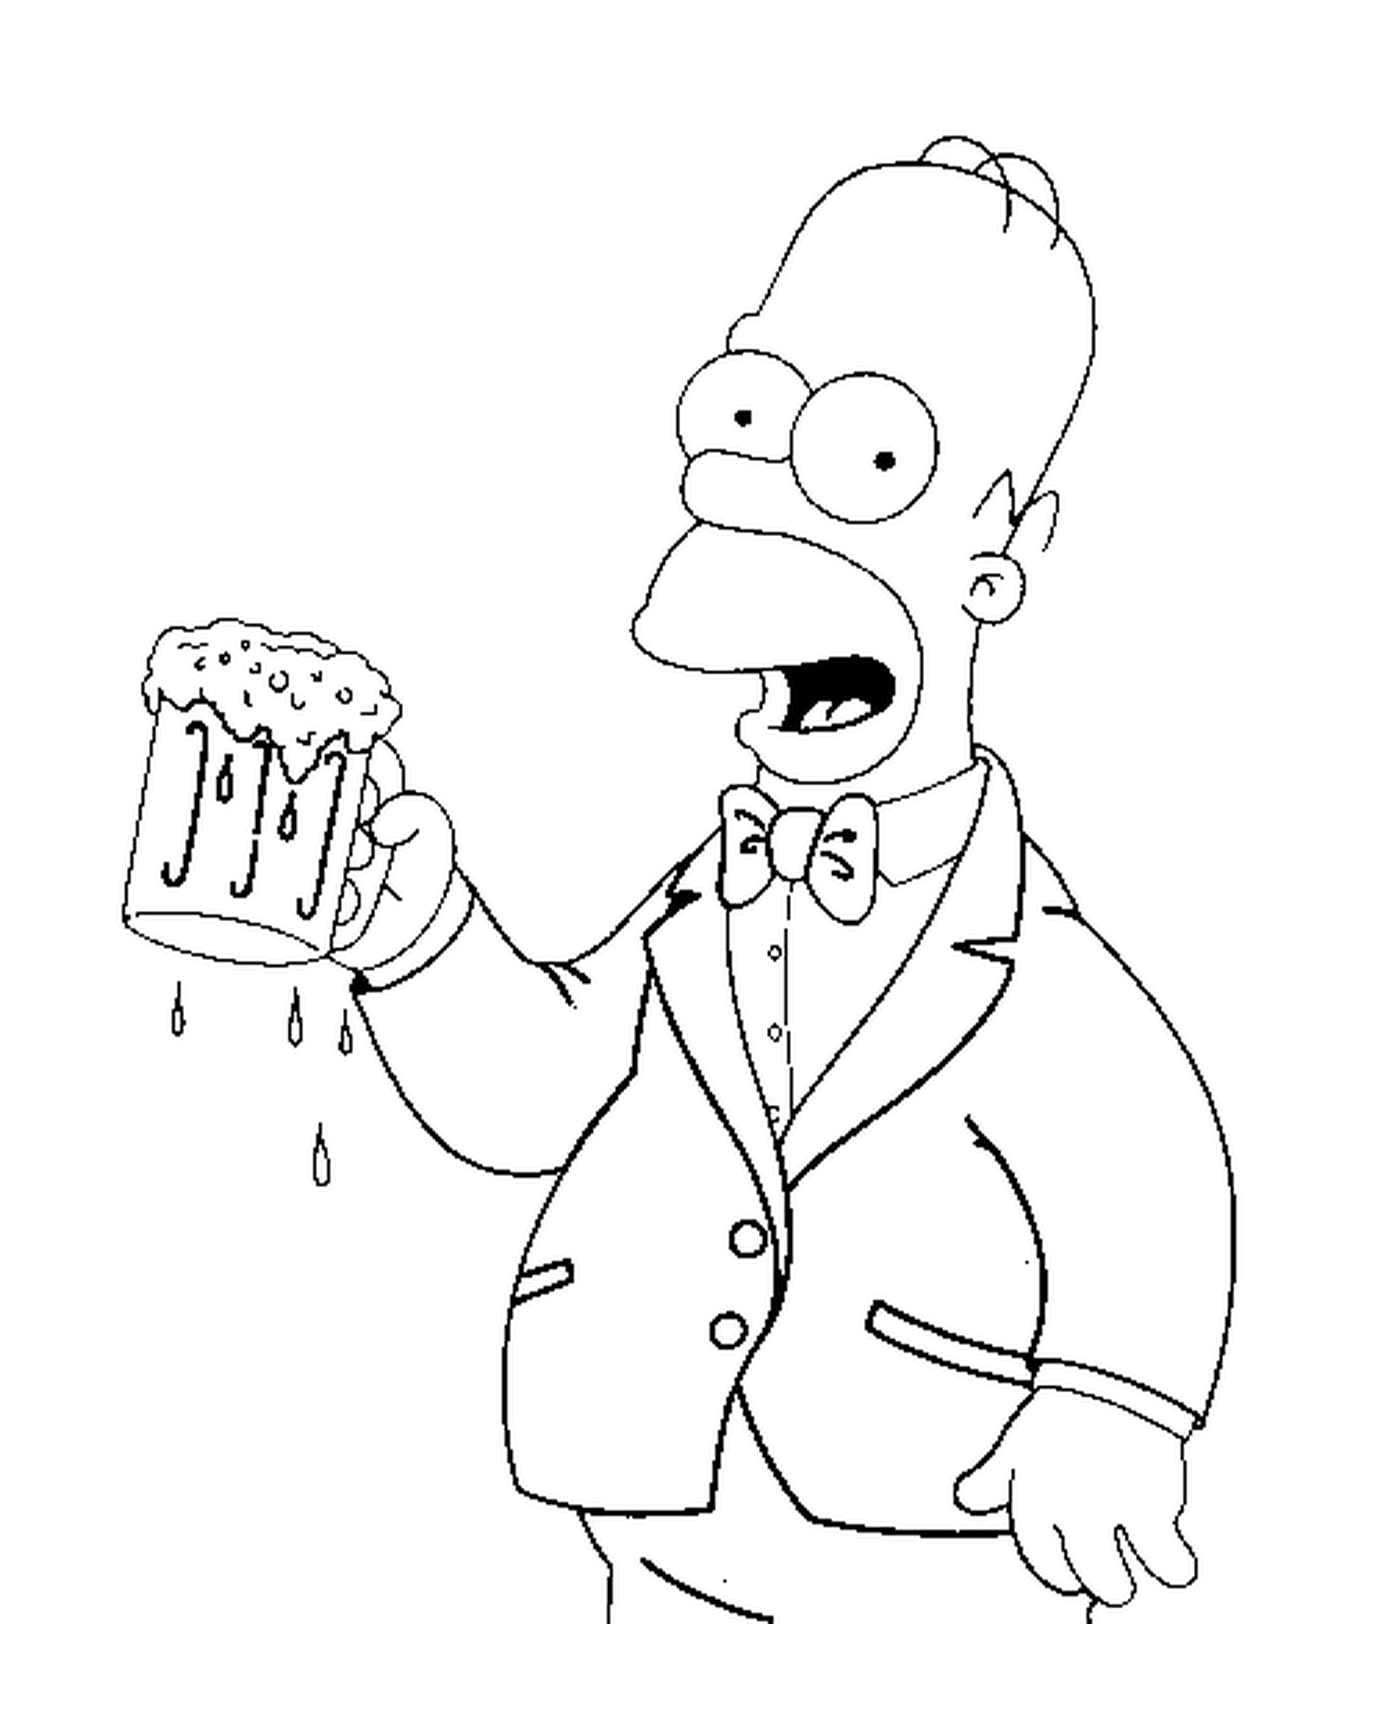  Homer tem uma cerveja fresca 